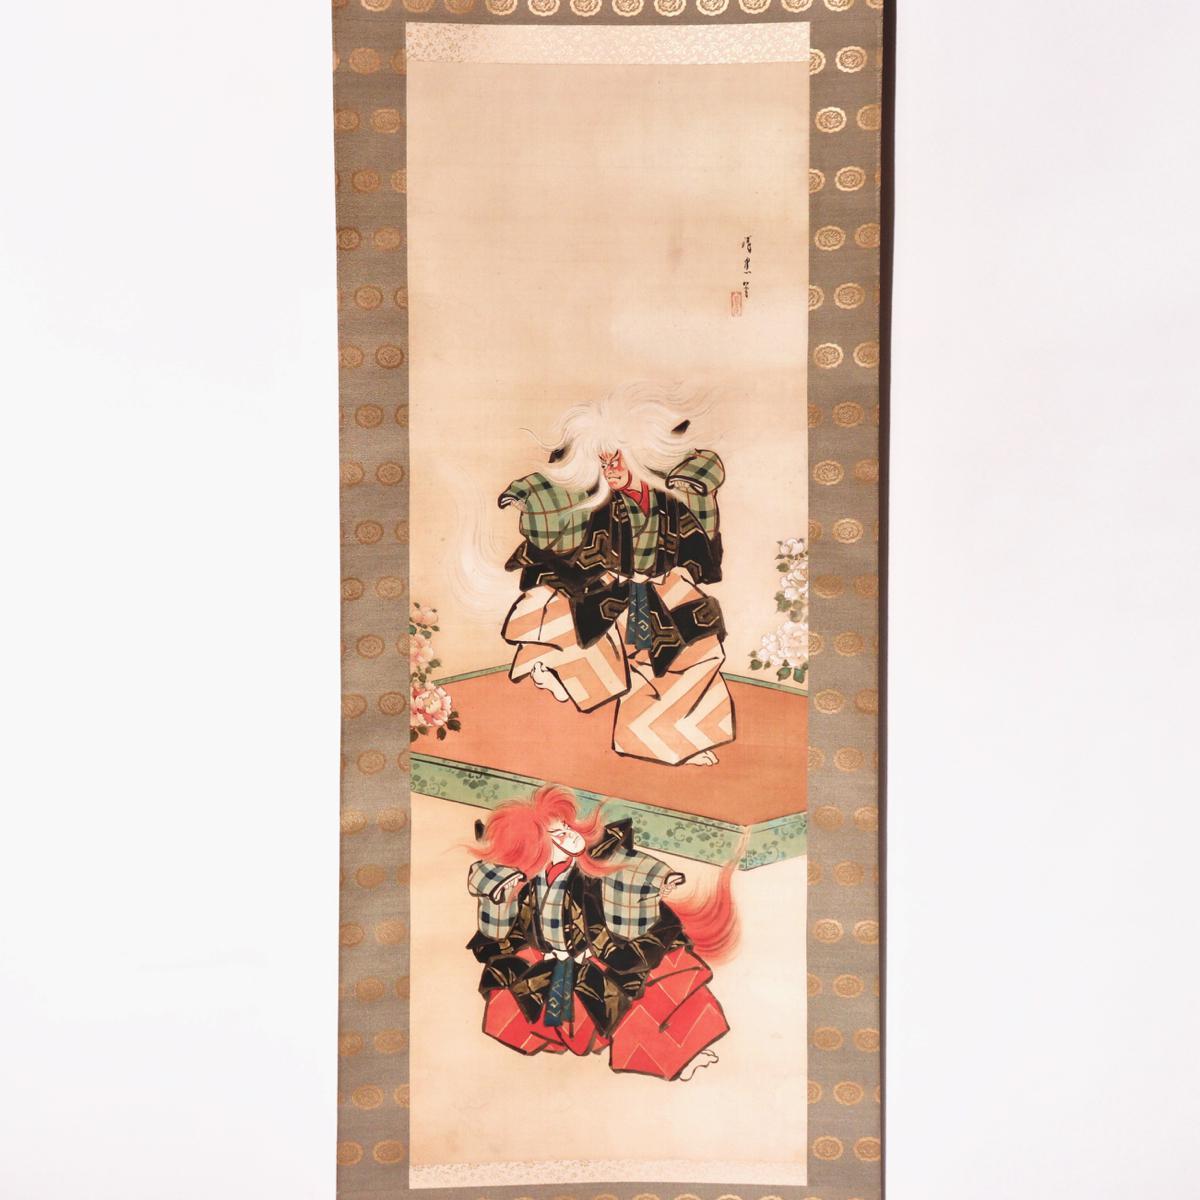 Japanische Farben, Gofun und Metallics auf Seide Malerei von Noh / Kabuki-Tänzer, zeigt zwei Figuren von Schauspielern tanzen in dem Stück Shakkyo porträtiert ein Paar shishi (Löwen), einer auf einem Stand mit weißen Perücke flankiert von